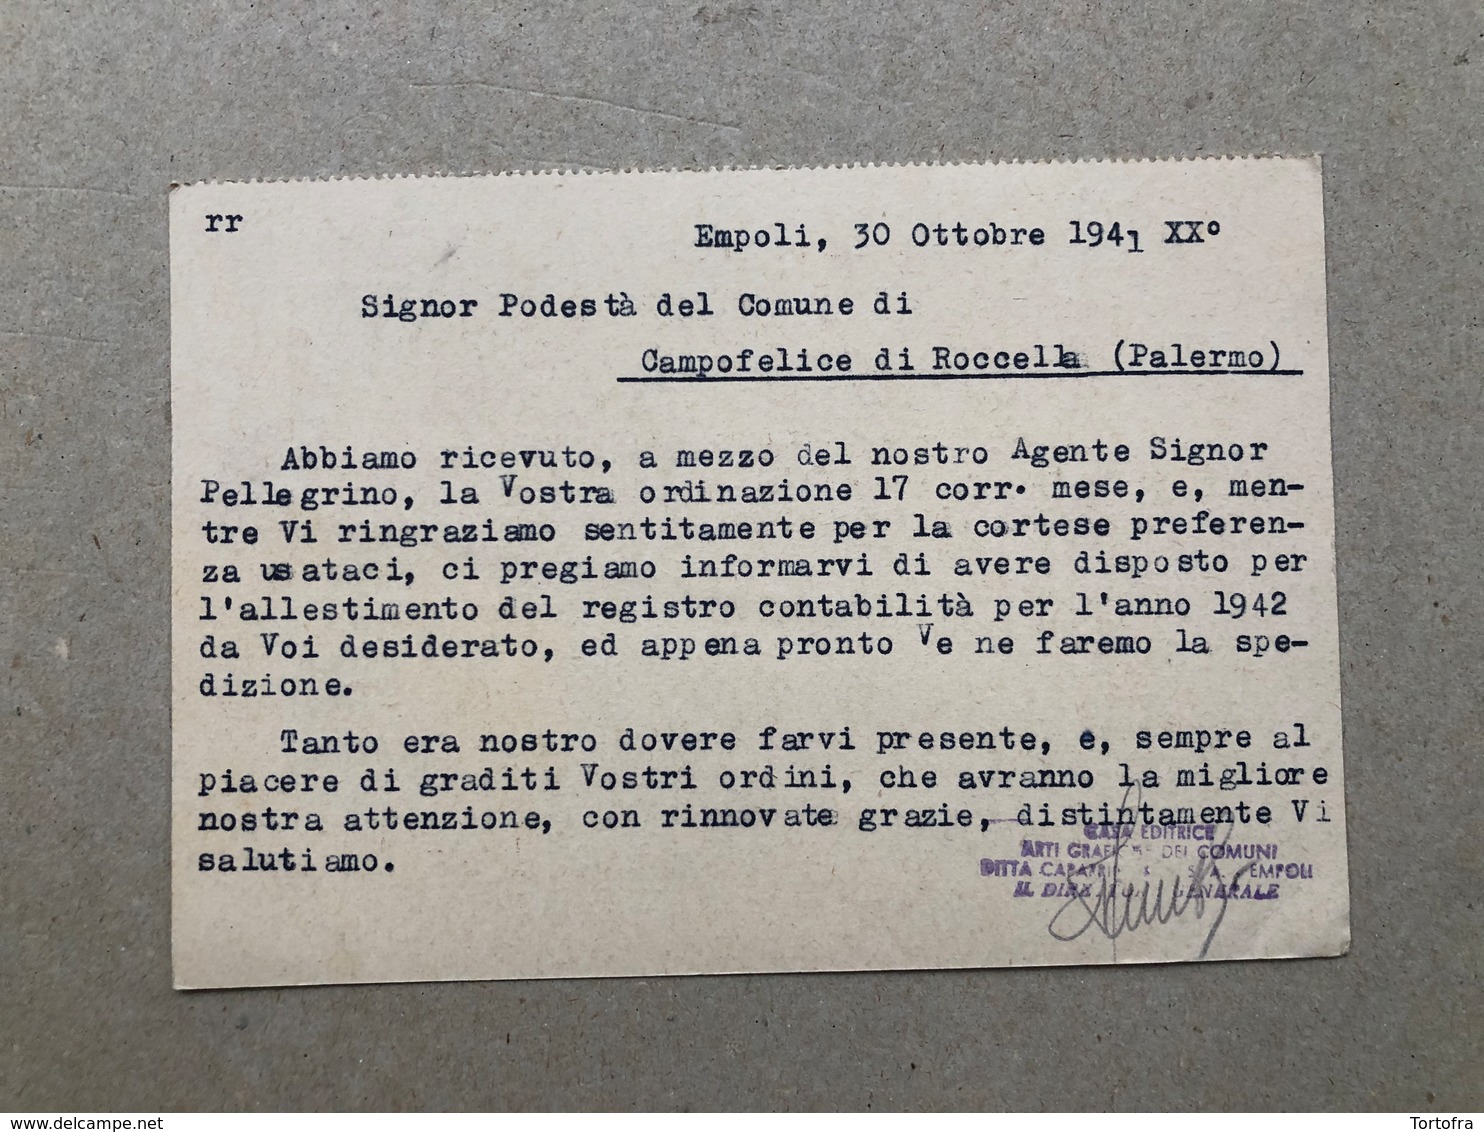 EMPOLI CASA EDITRICE ARTI GRAFICHE DEI COMUNI  DITTA CAPARRINI & C.  1941 - Empoli